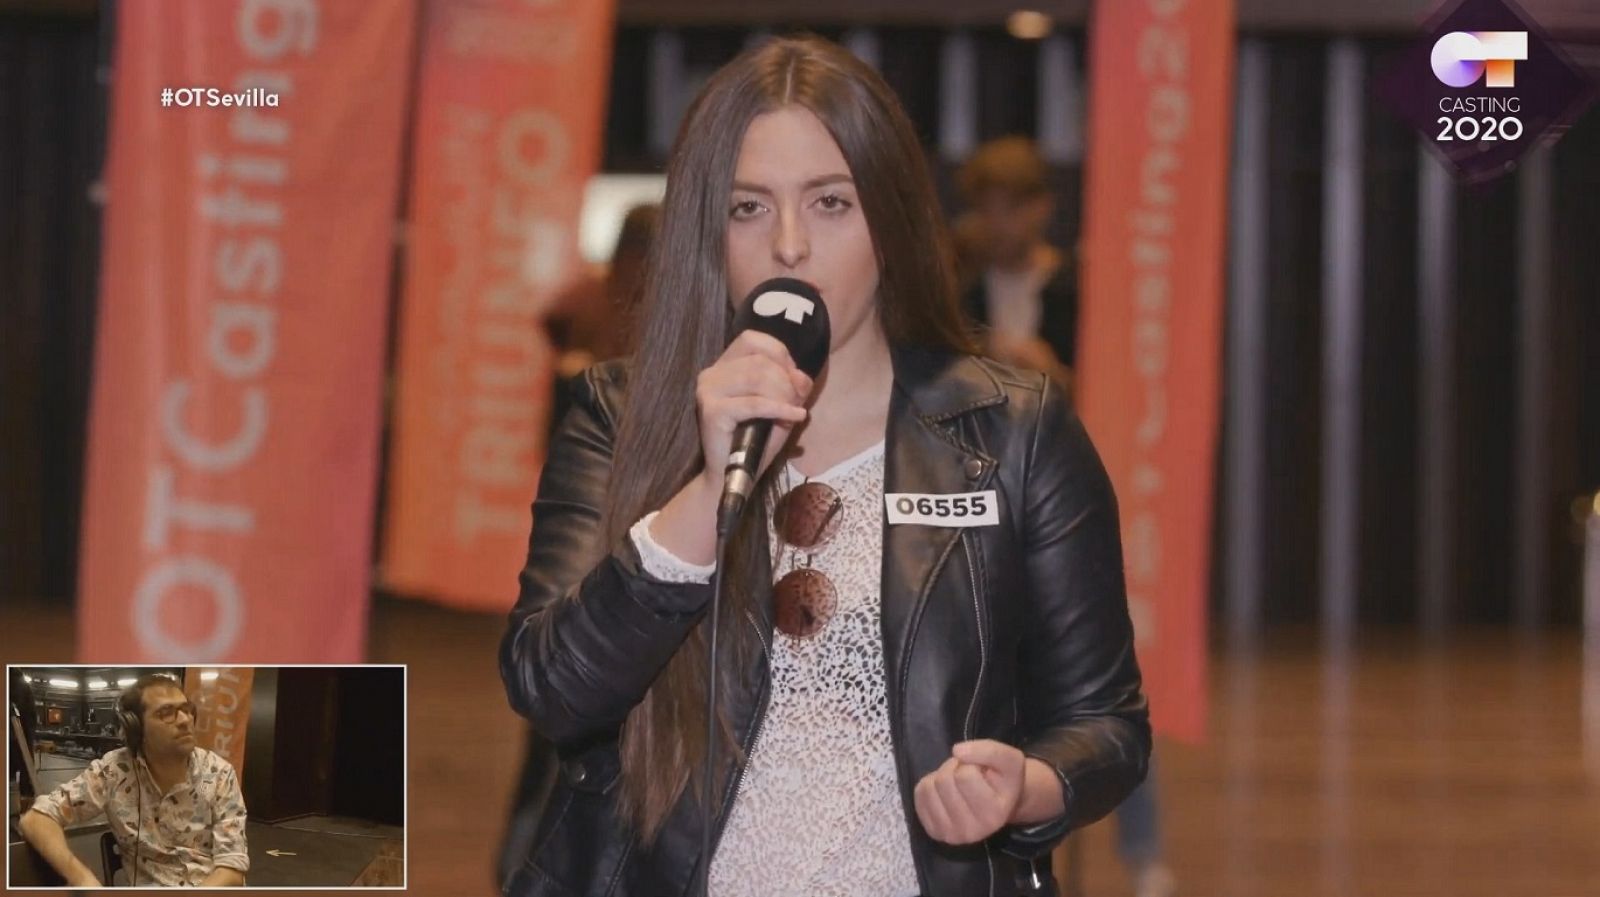 Una chica desafina cantando "Sobreviviré" de Mónica Naranjo en la Fase 1 del casting OT 2020 en Sevilla